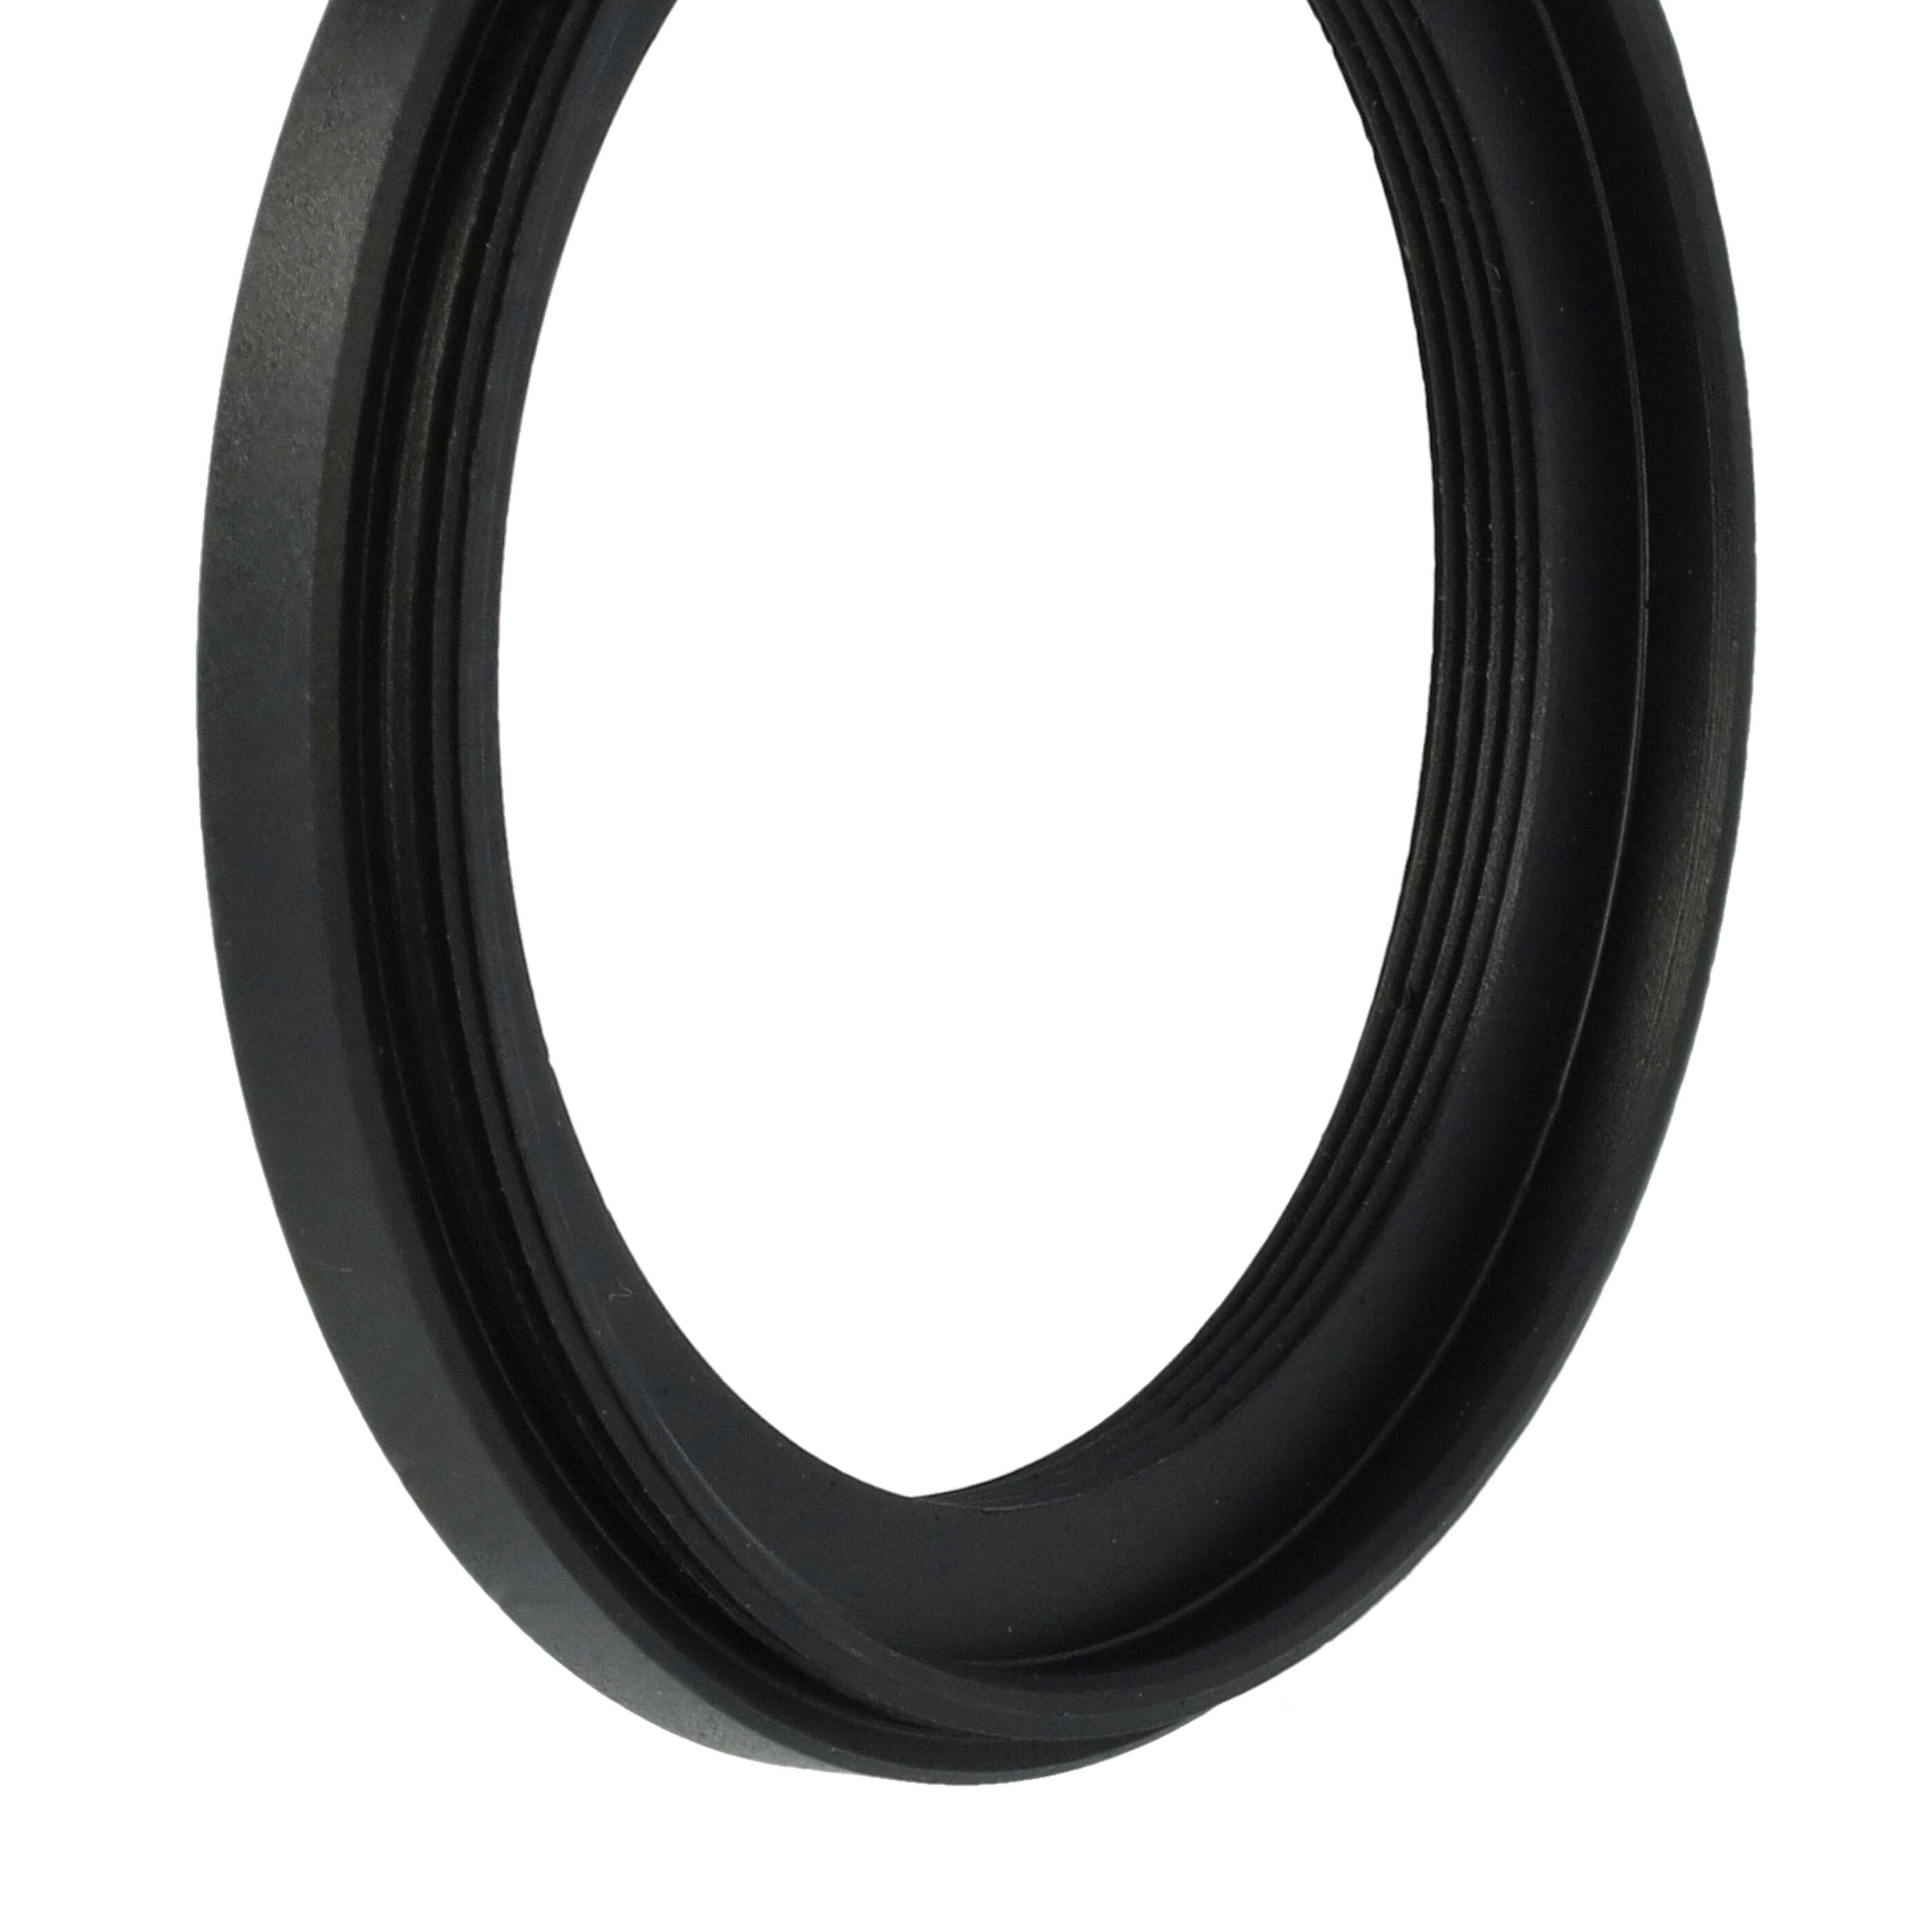 Anello adattatore step-down da 46 mm a 37 mm per obiettivo fotocamera - Adattatore filtro, metallo, nero